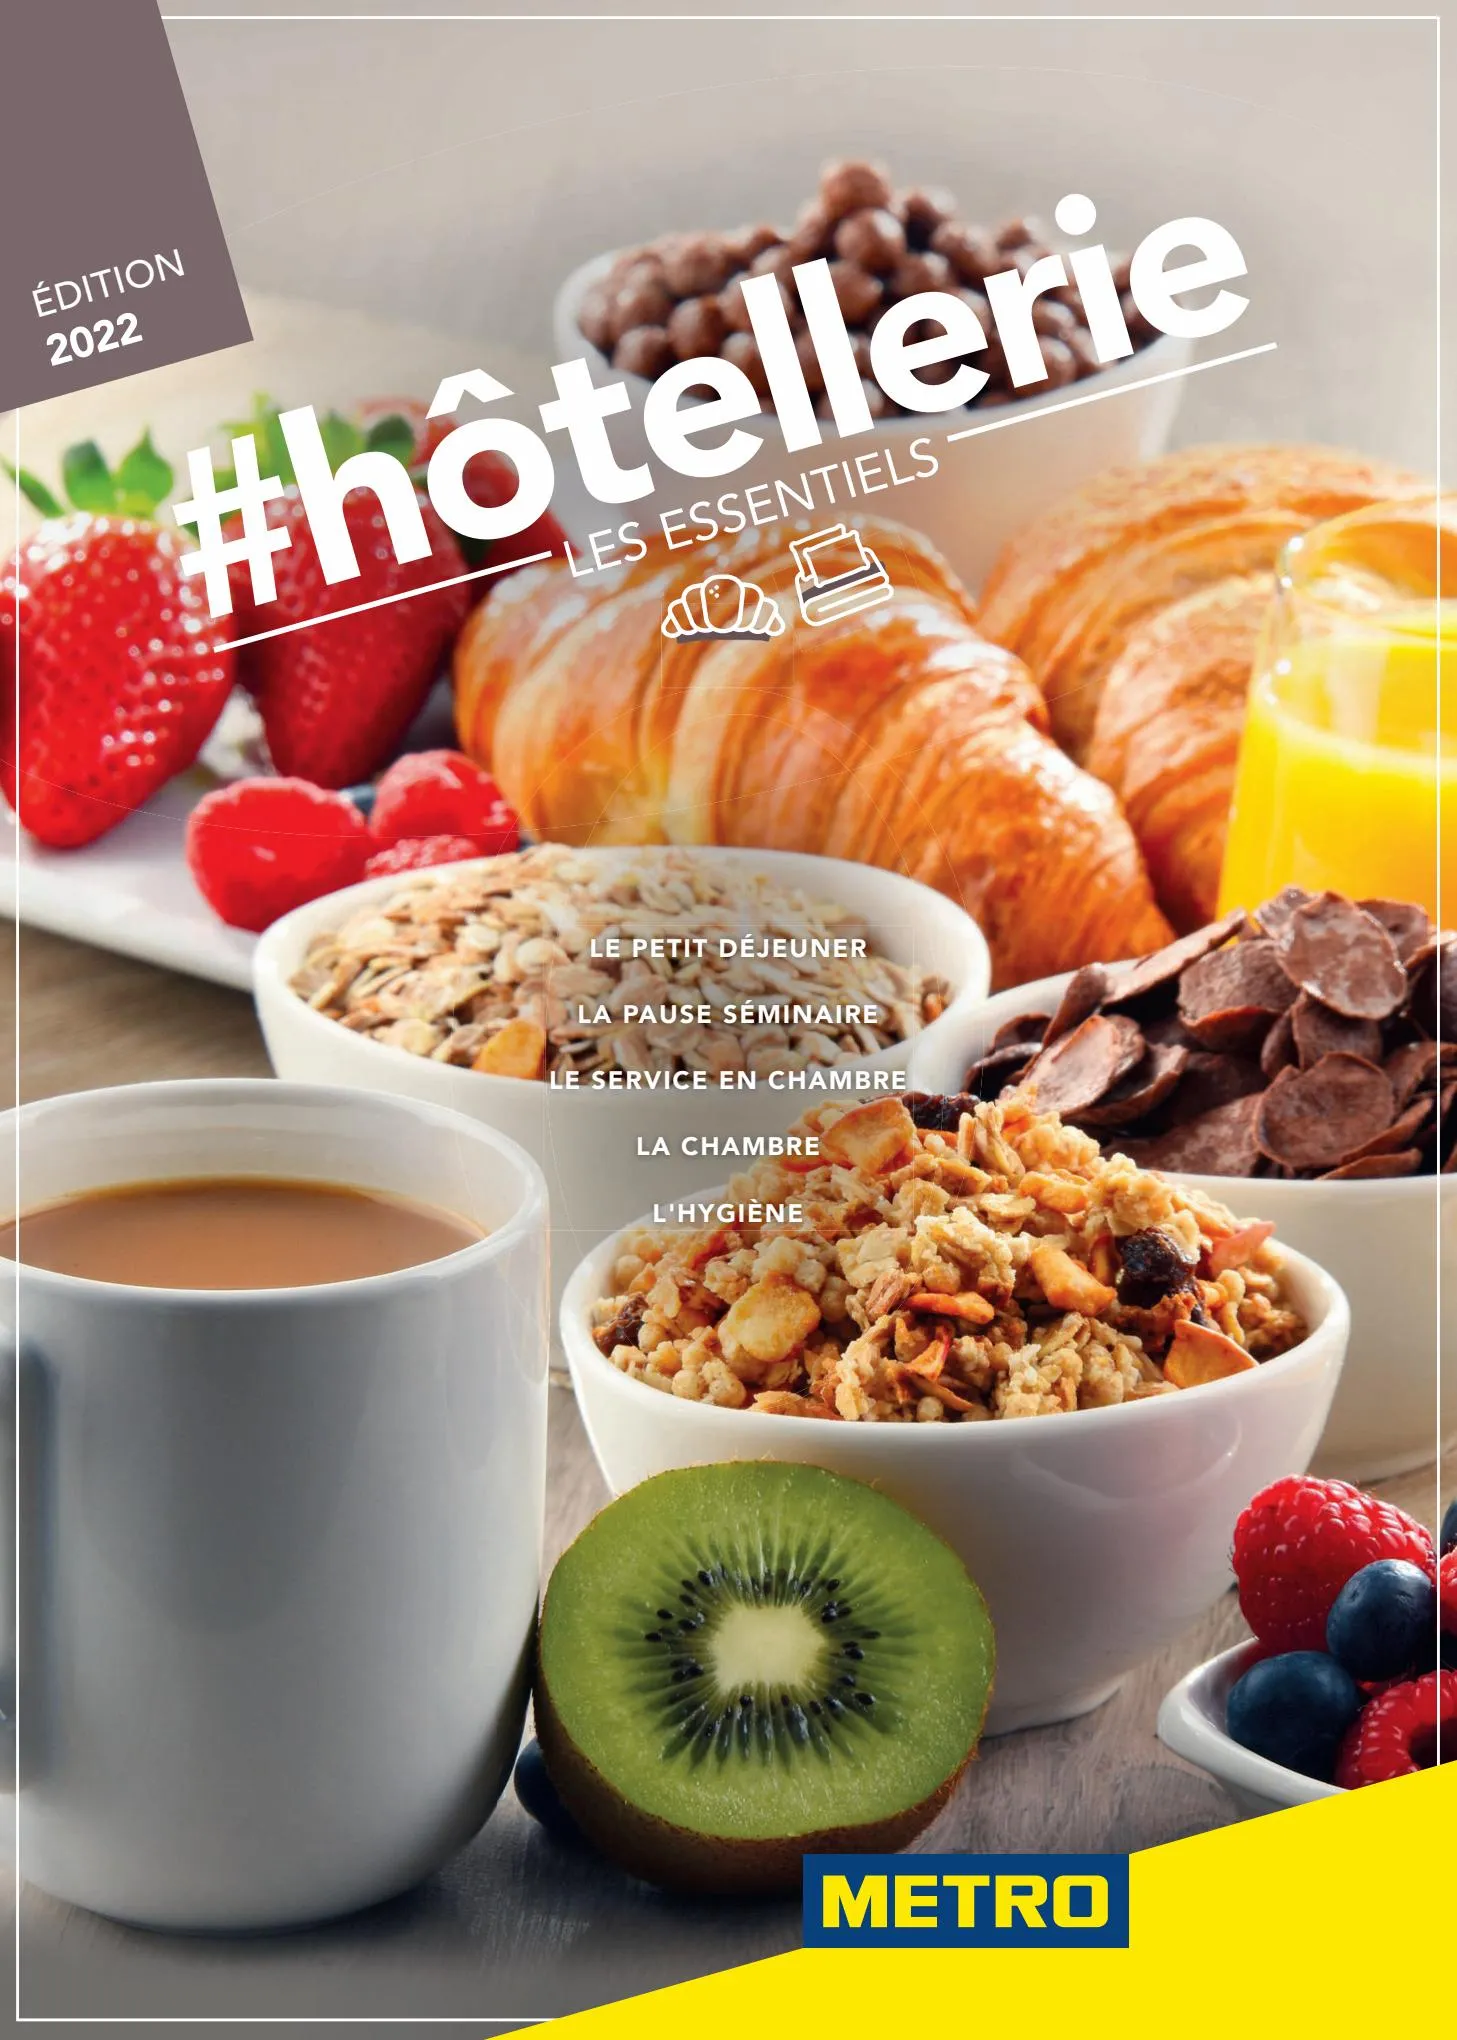 Catalogue #hôtellerie - Les essentiels, page 00001